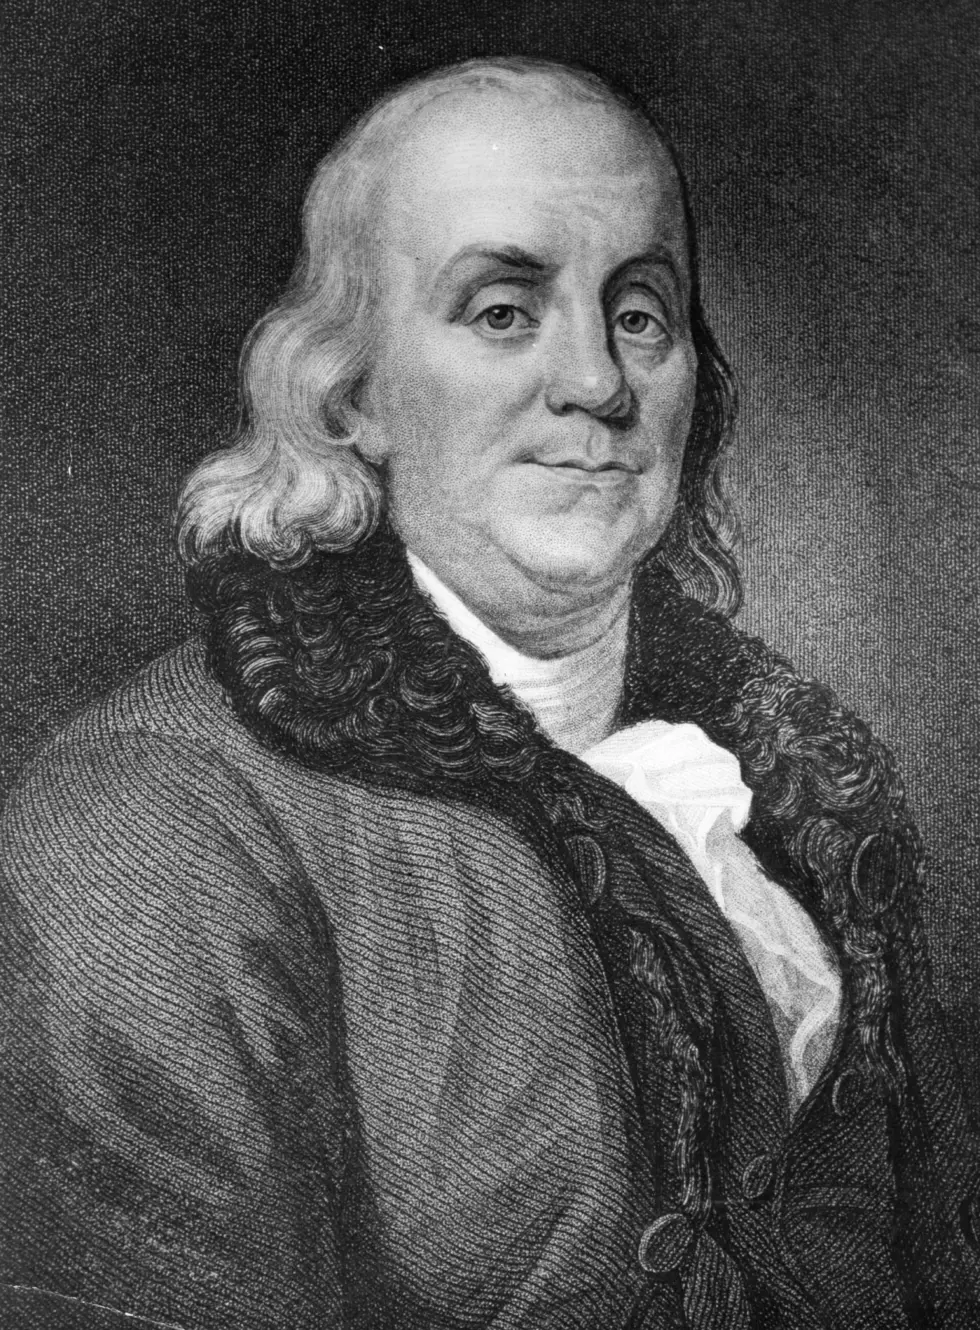 'Ben Franklin' to speak